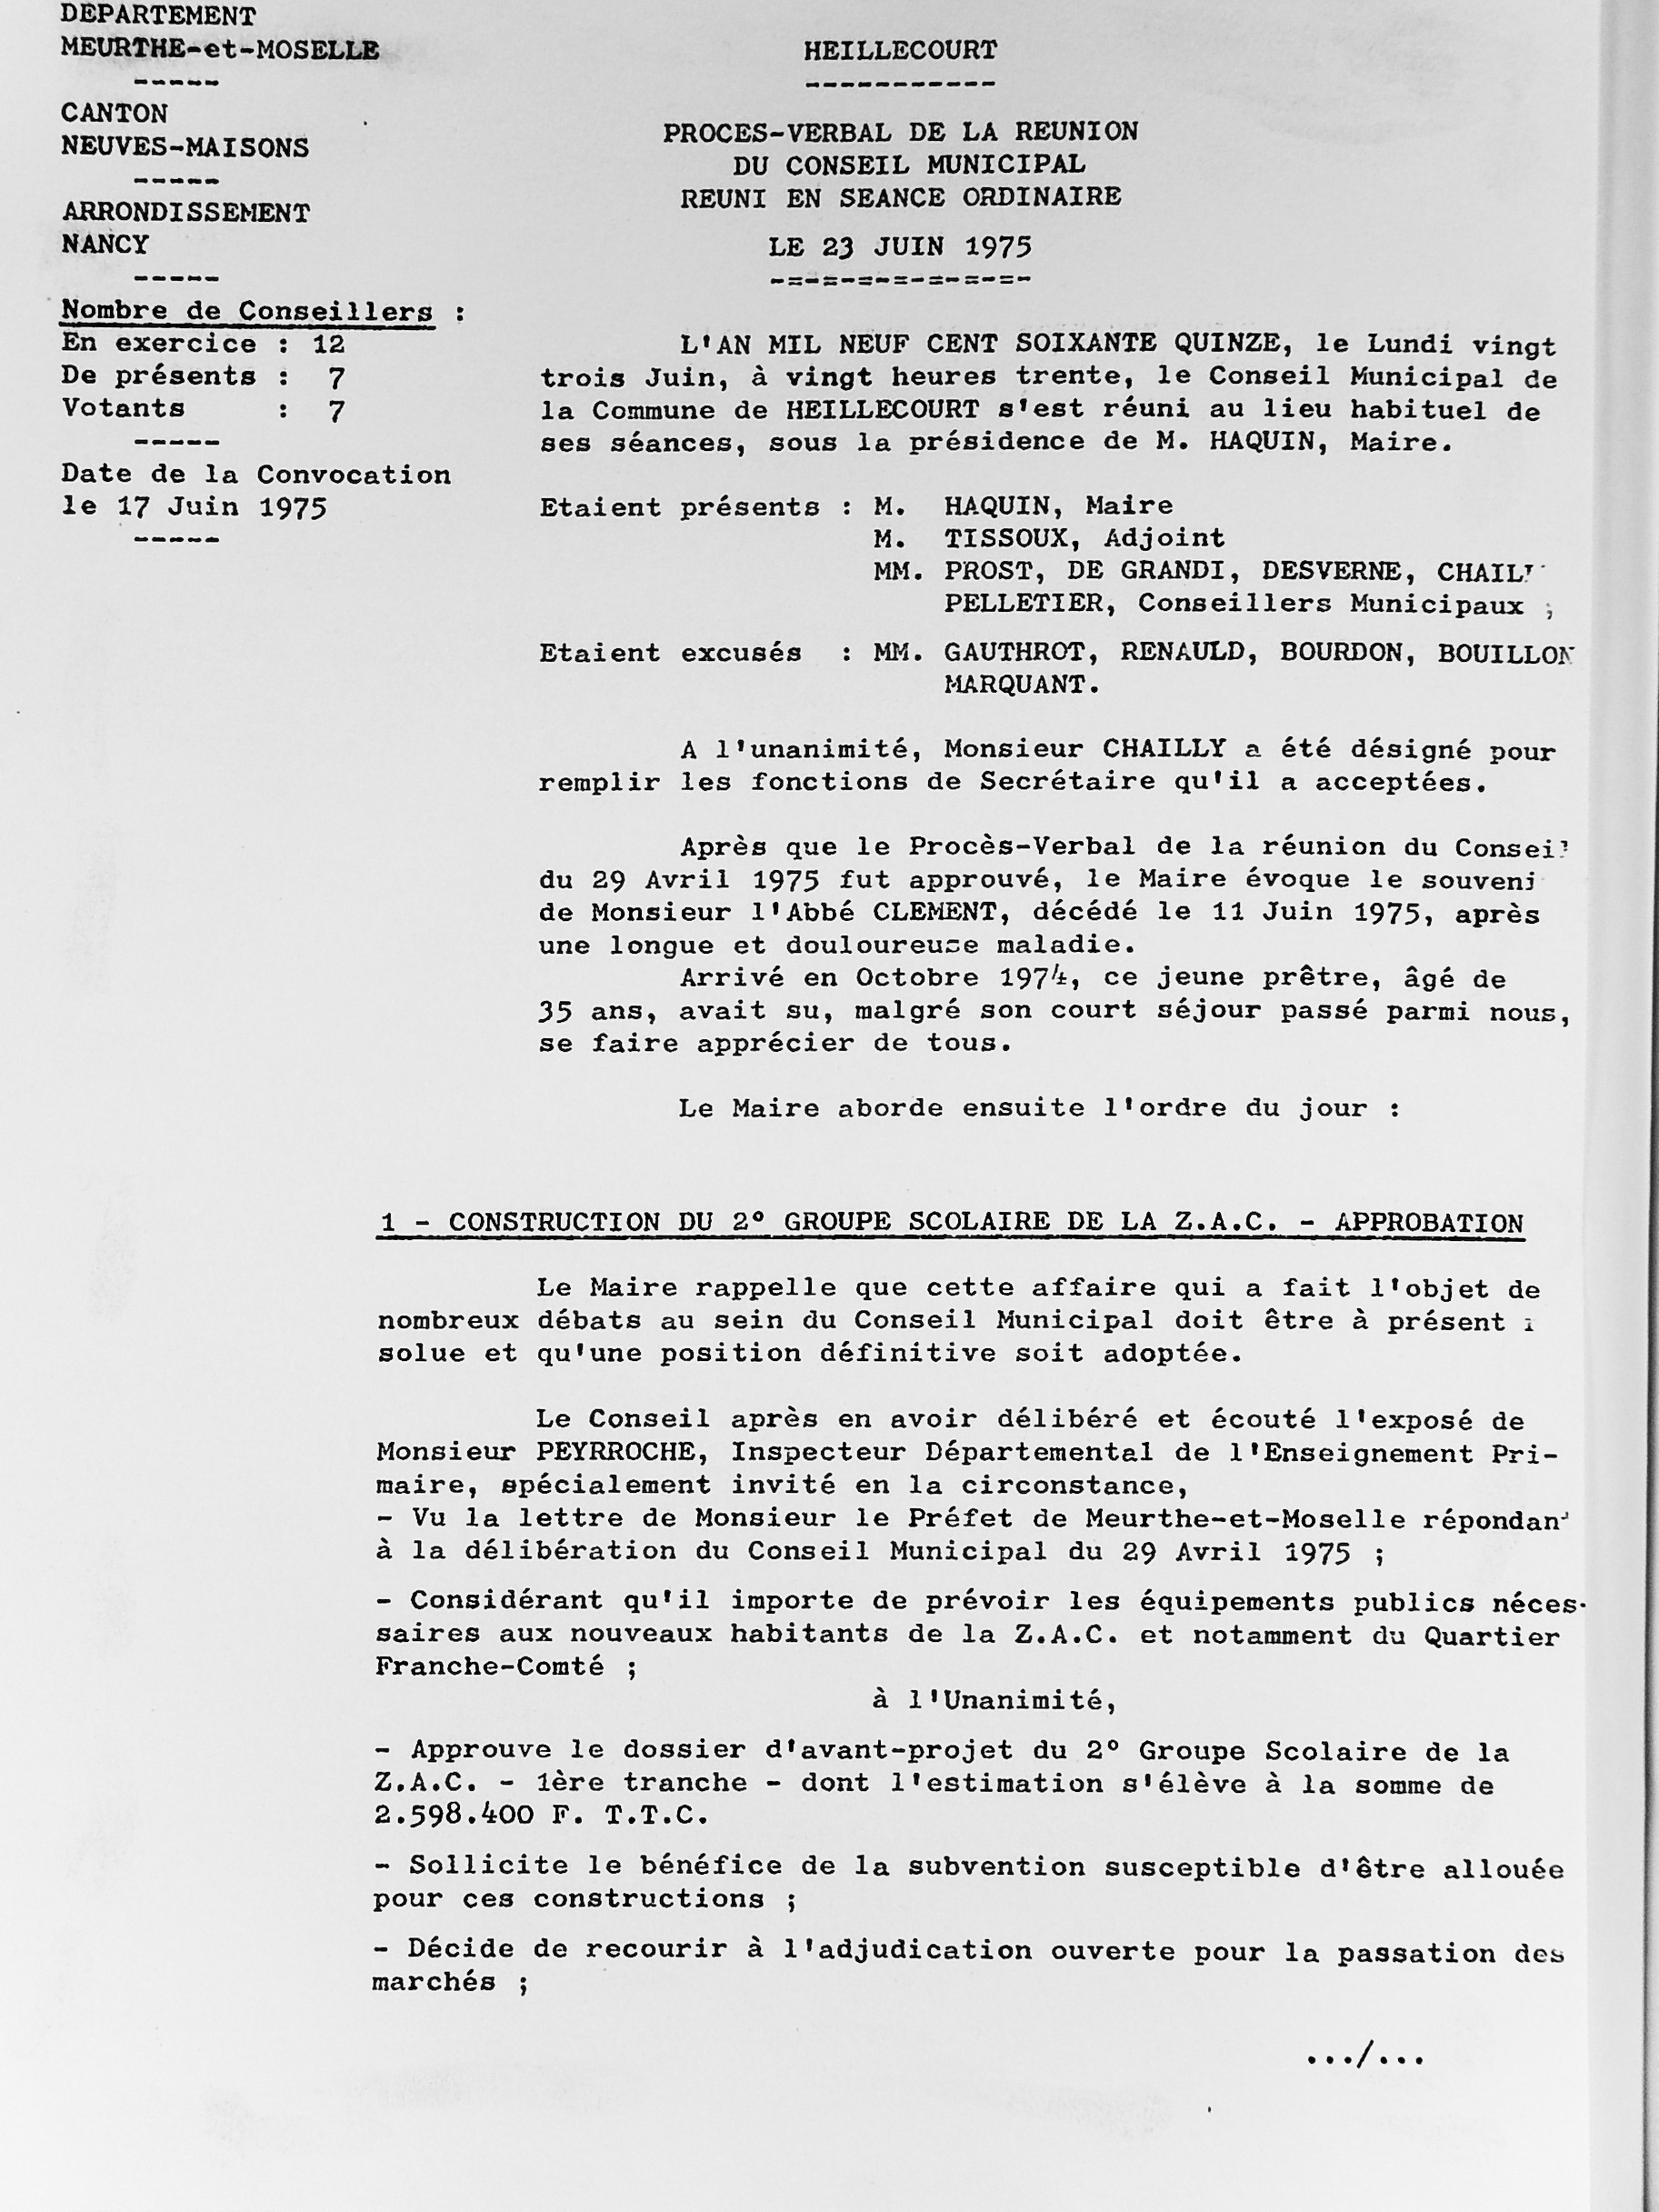 Feuillet_029B-1974-1977.jpg